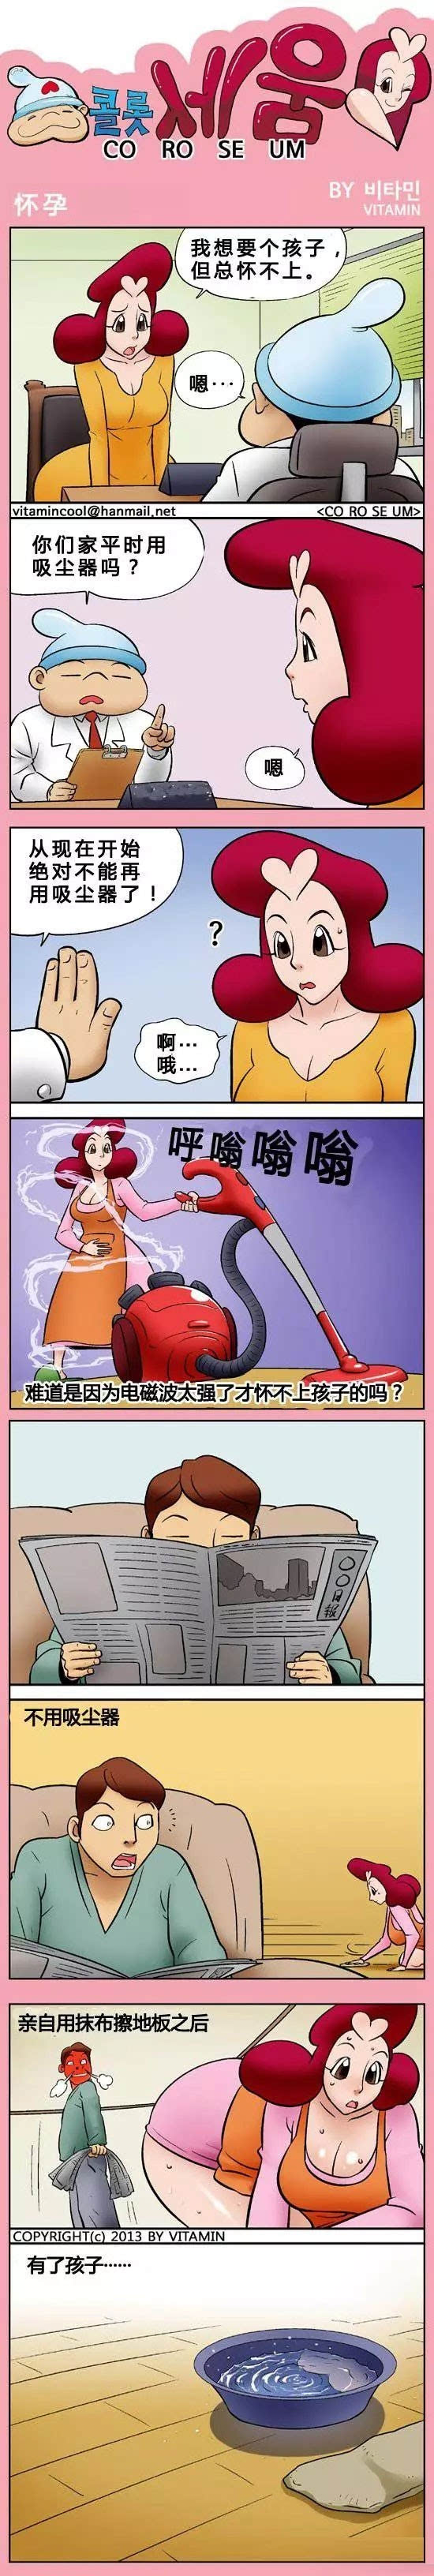 奇葩无厘头漫画《怀孕》,女人必须少用吸尘器